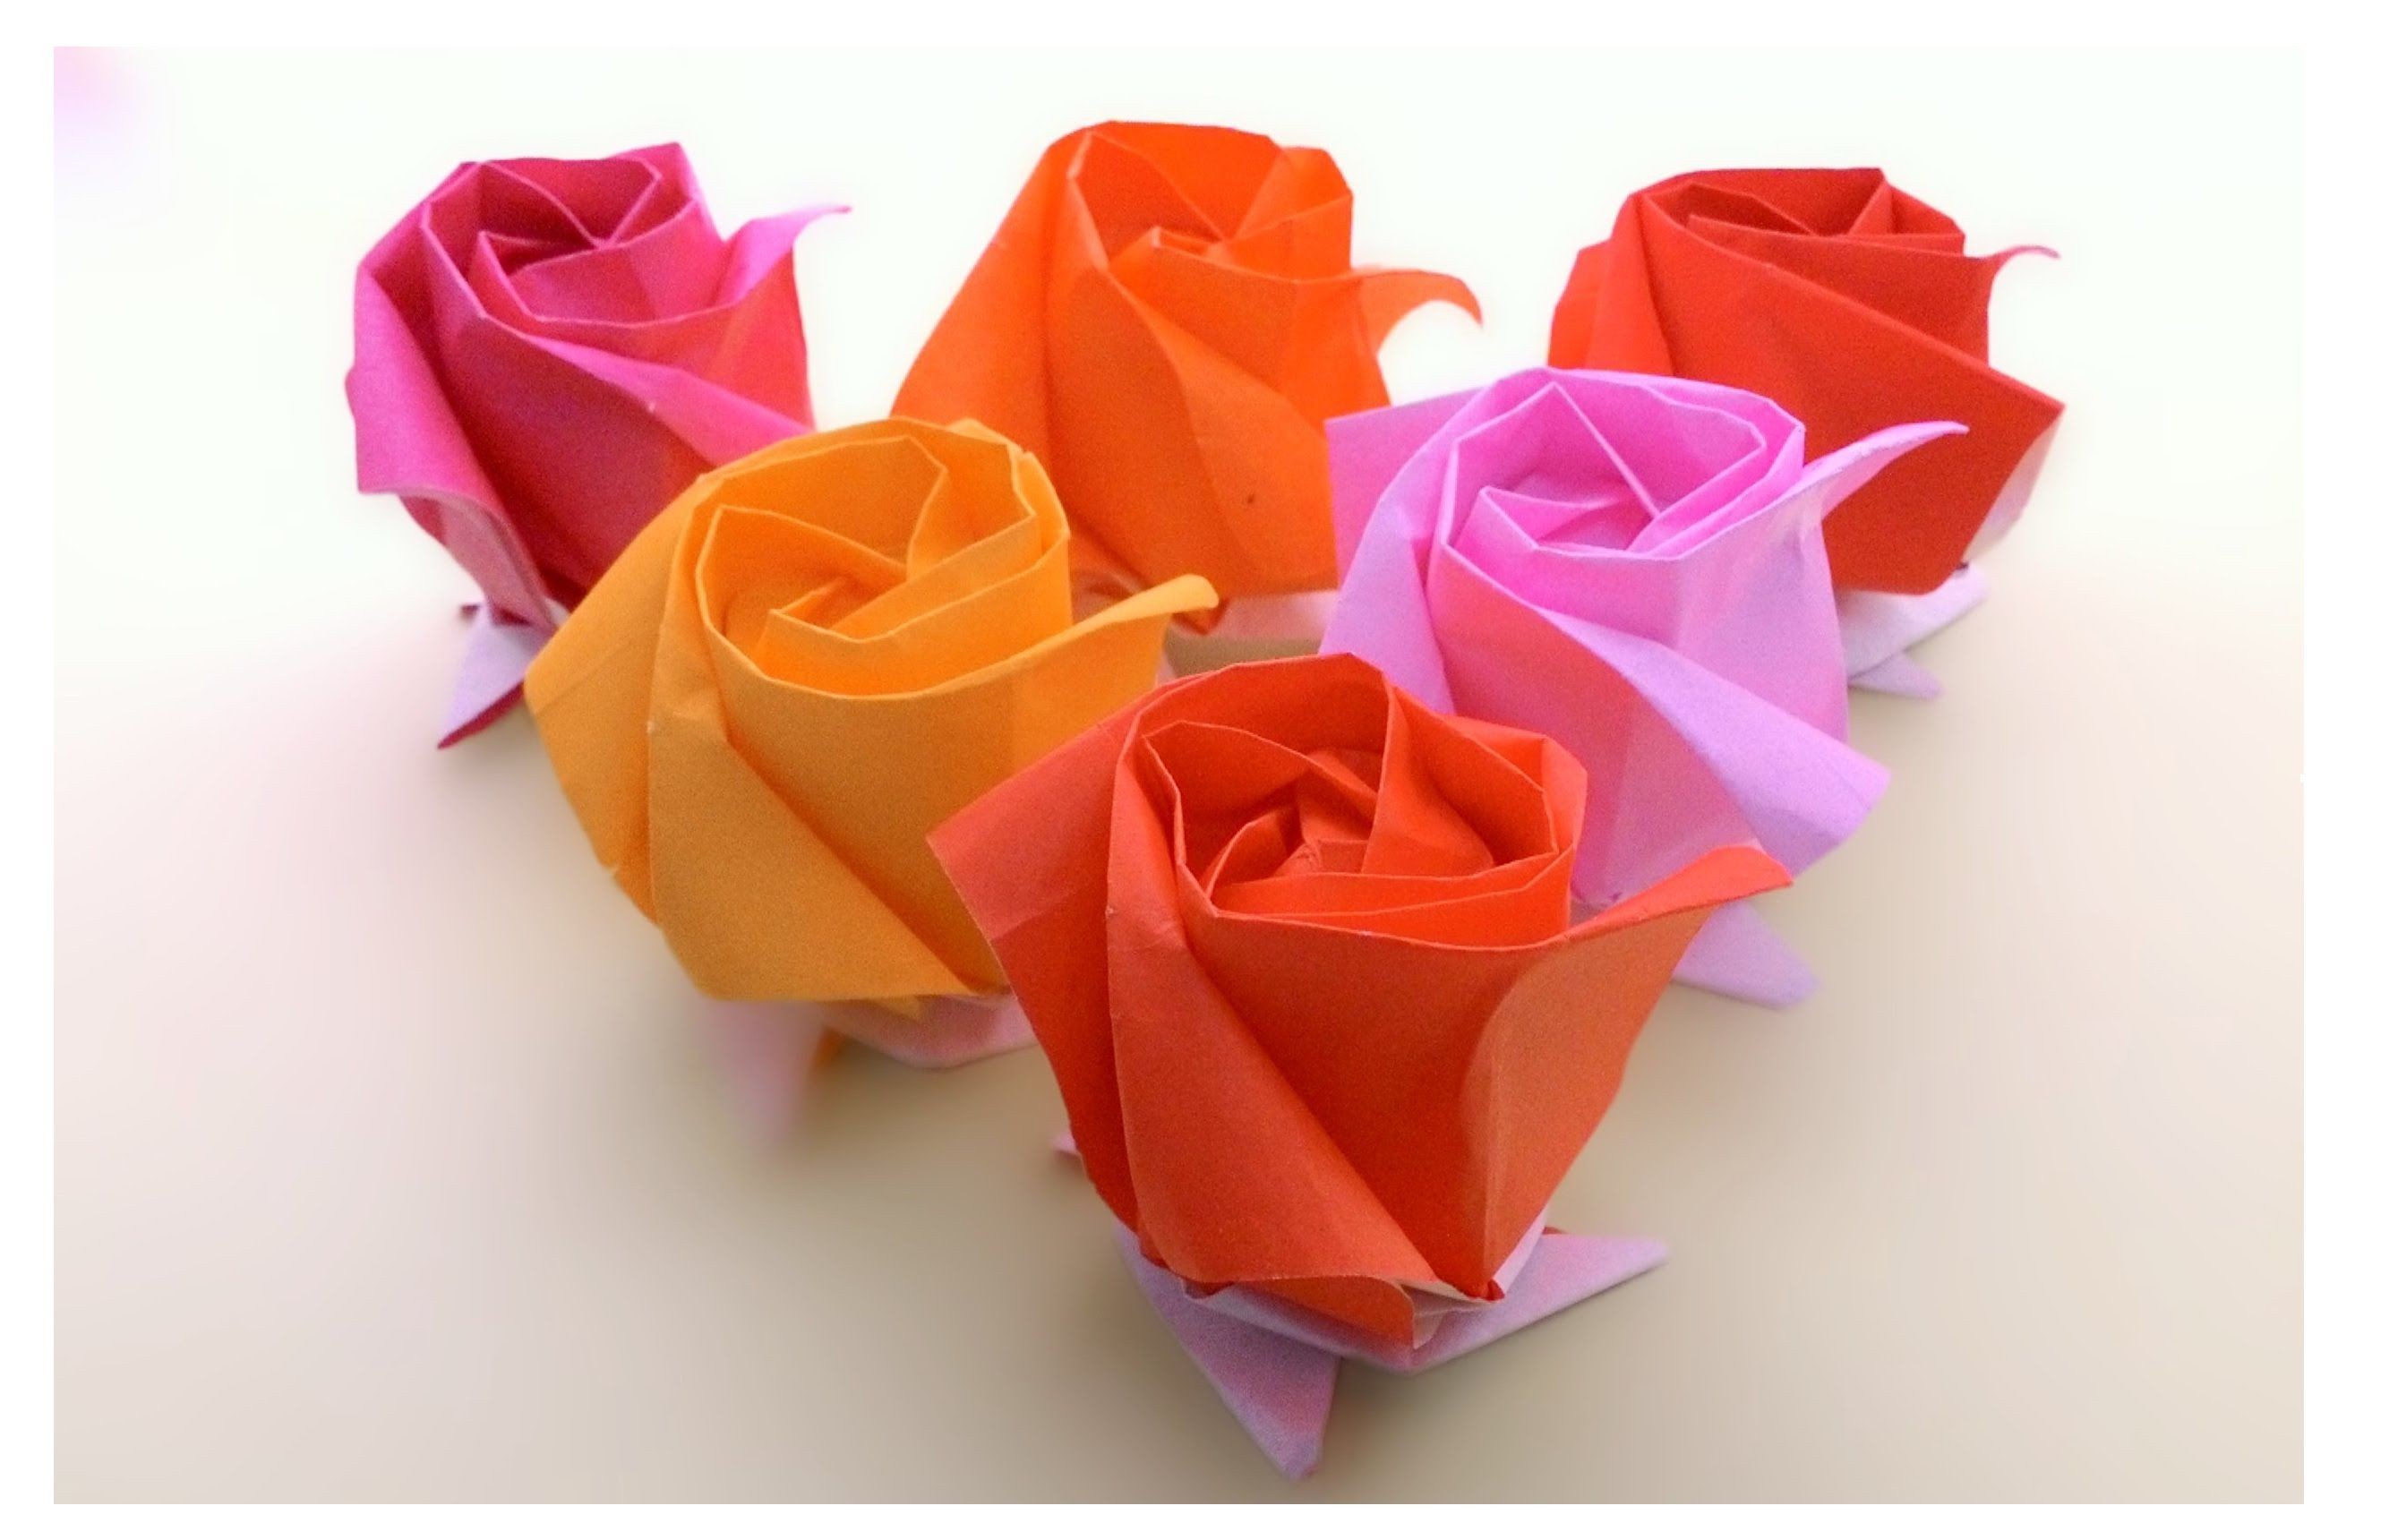 Rose Papercraft origami Kawasaki Rose à¸à¸±à¸à¸à¸¸à¸ à¸¥à¸²à¸à¸à¸²à¸§à¸²à¸à¸²à¸à¸´ à¹à¸ªà¸à¸ªà¸§à¸¢